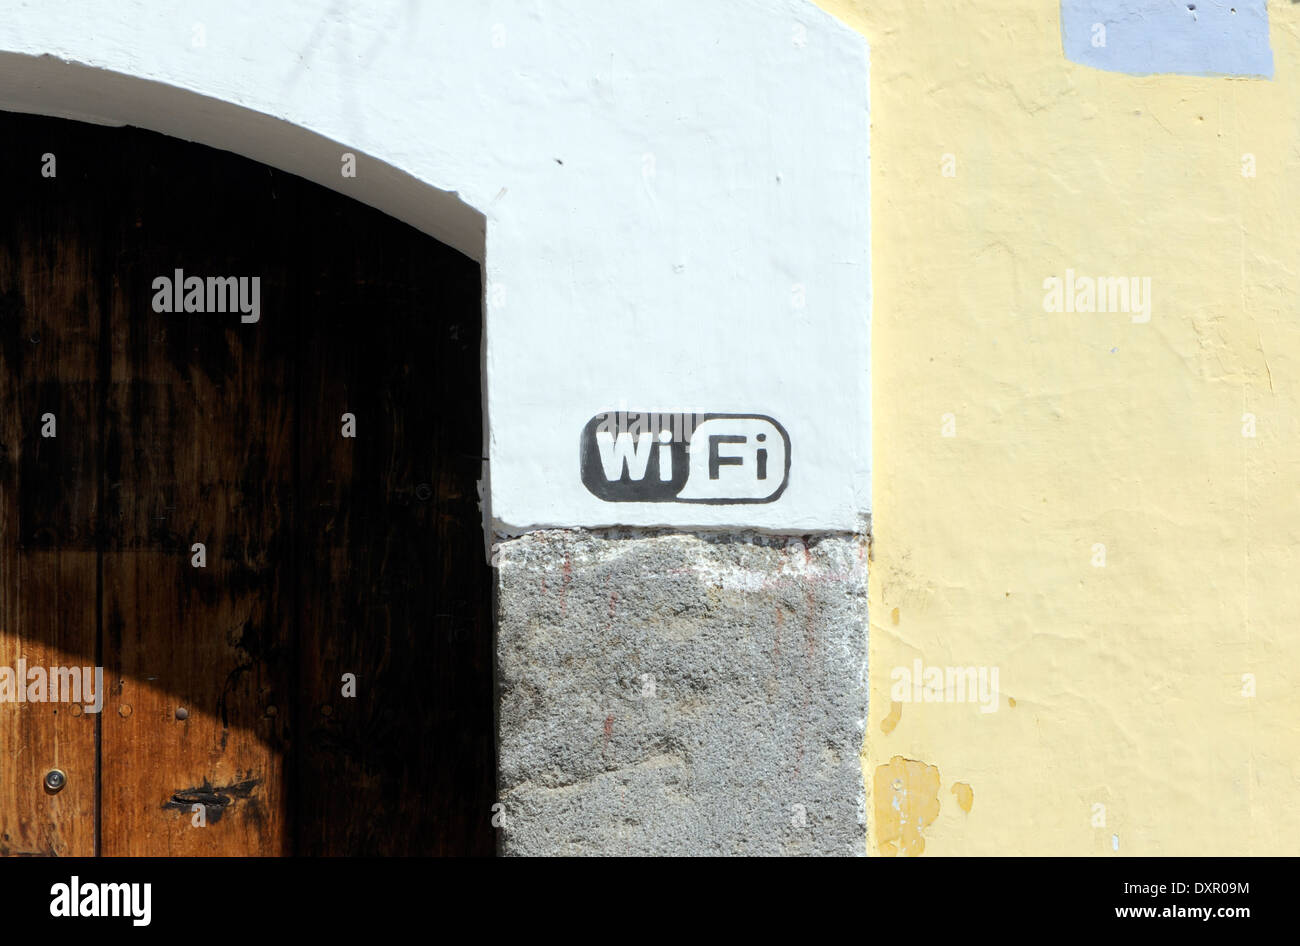 Connexion Wi-Fi au réseau local signe sur un mur. Antigua Guatemala, République du Guatemala. Banque D'Images